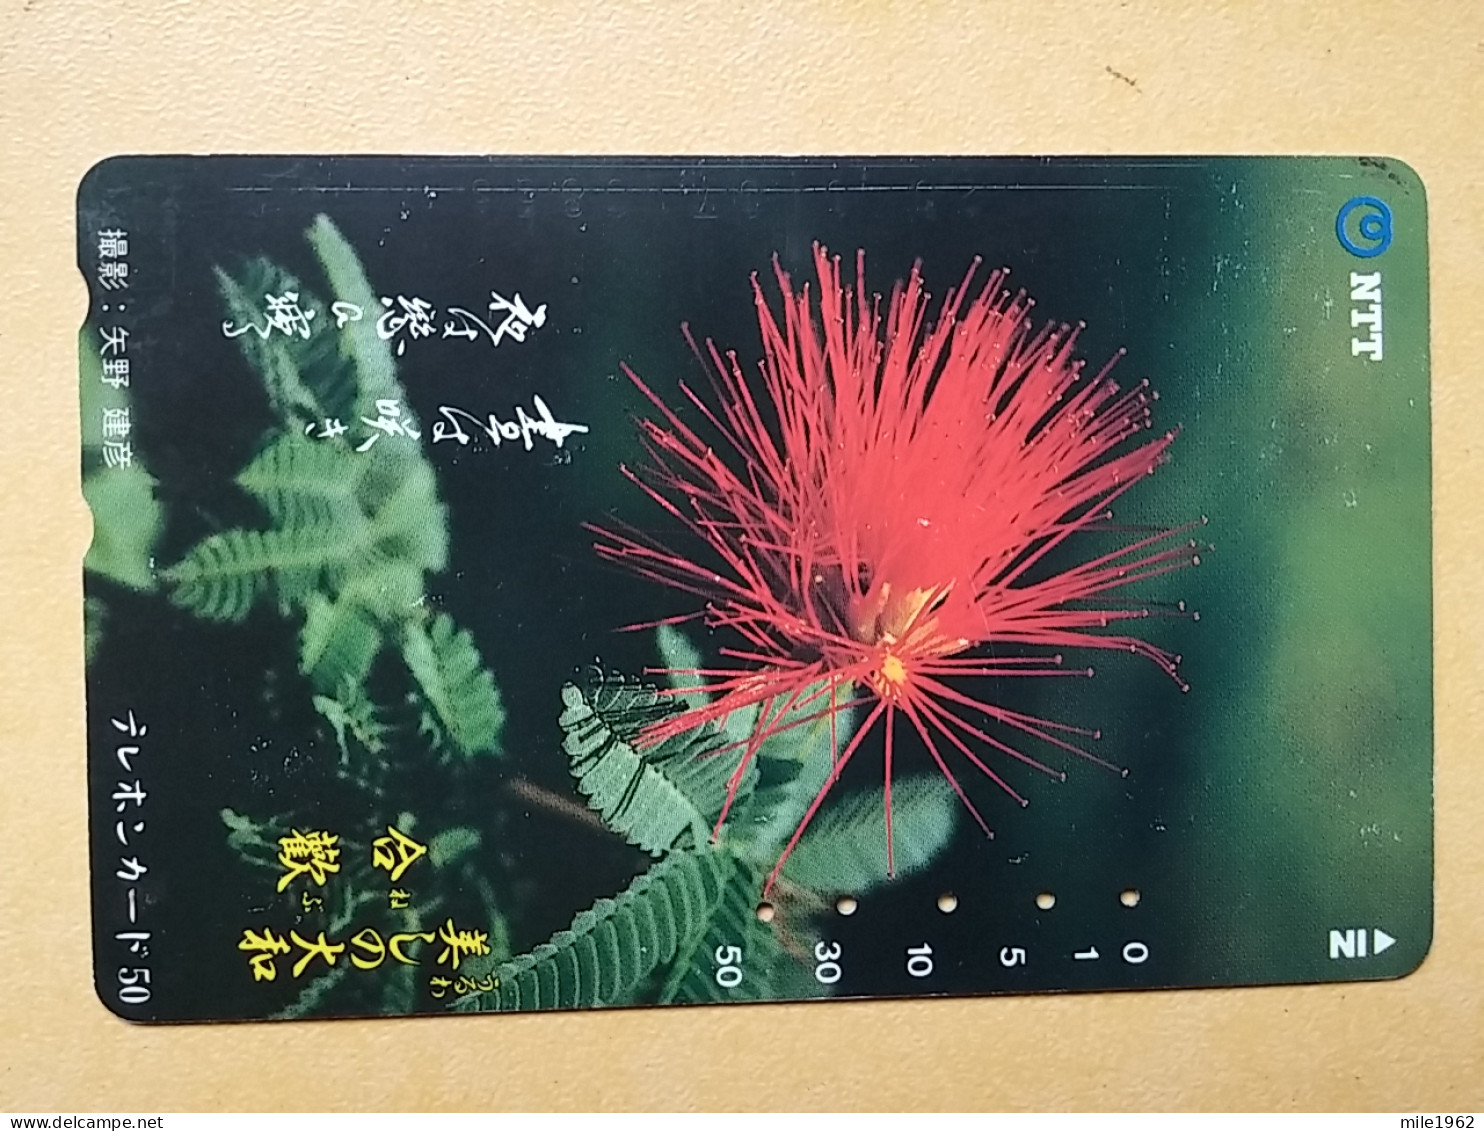 T-383 - JAPAN, Japon, Nipon, TELECARD, PHONECARD, Flower, Fleur, NTT 331-141 - Flowers